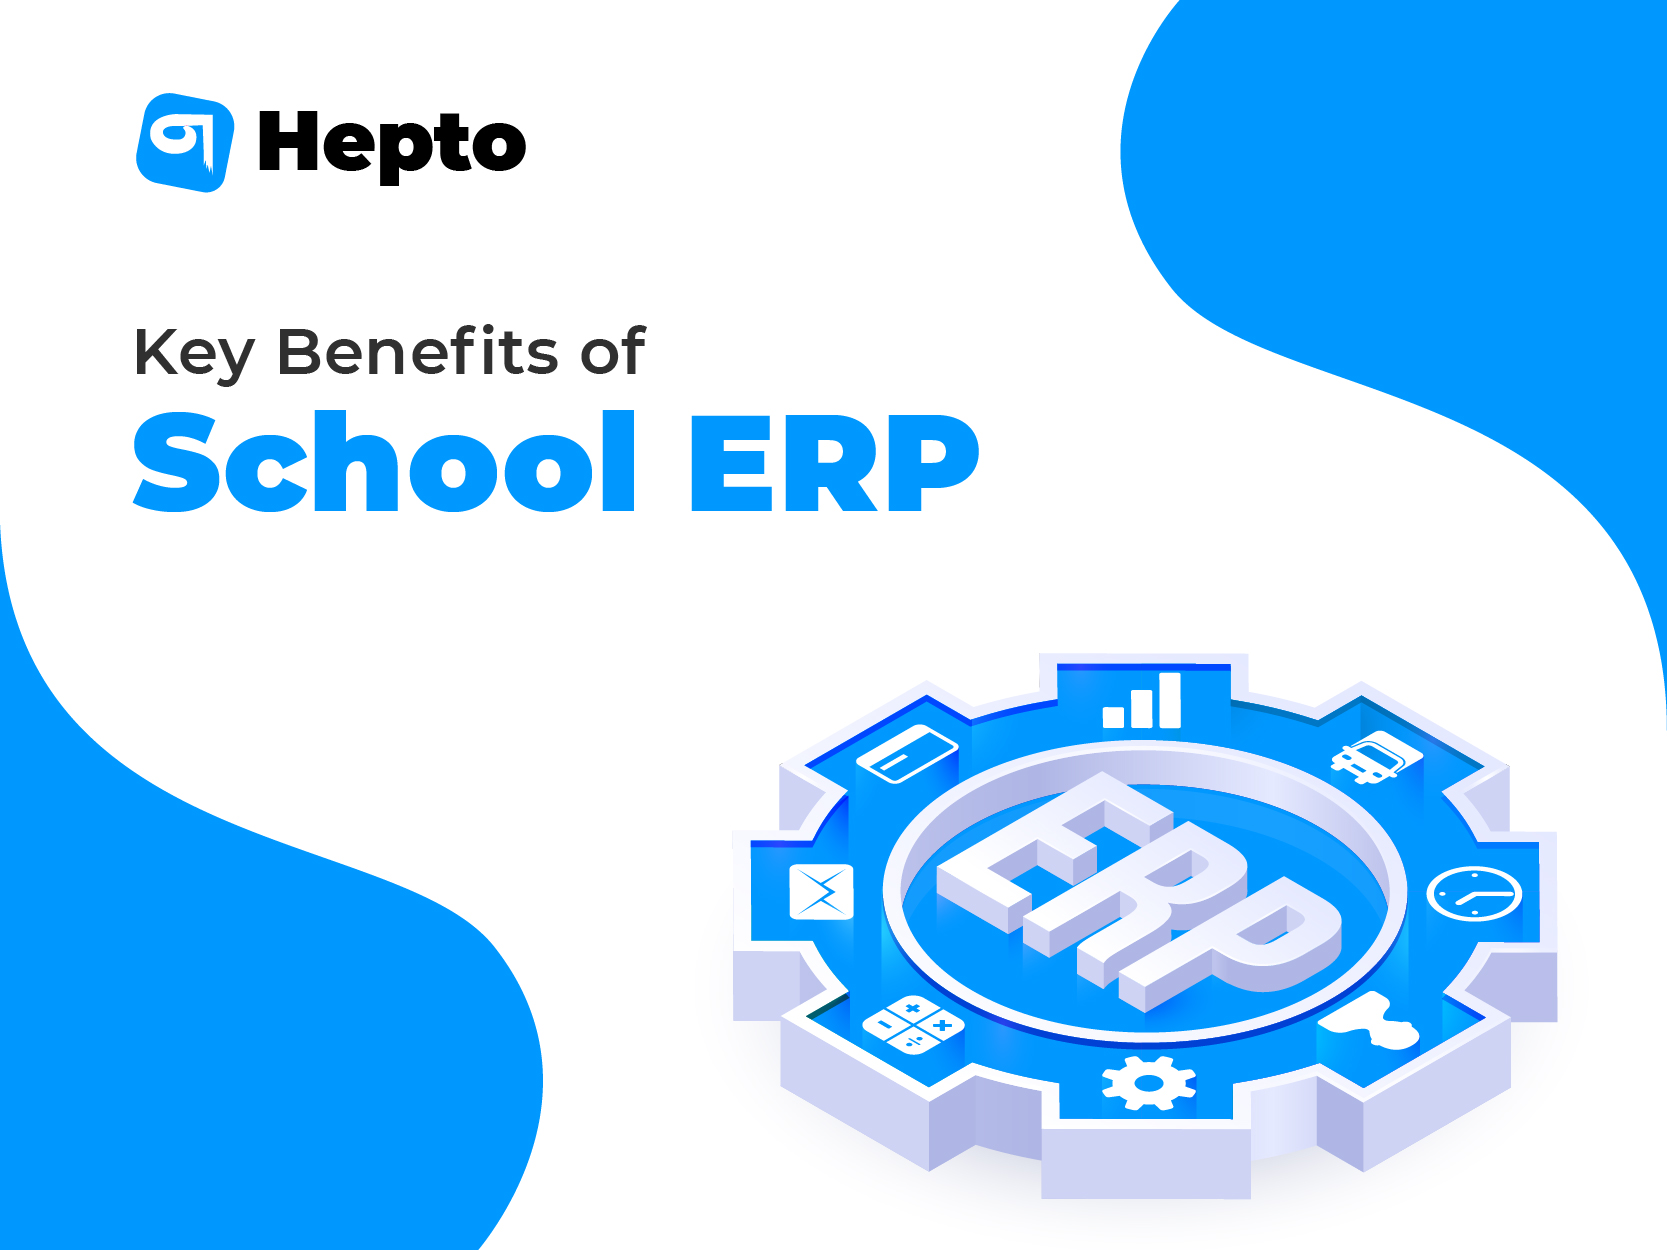 School ERP software